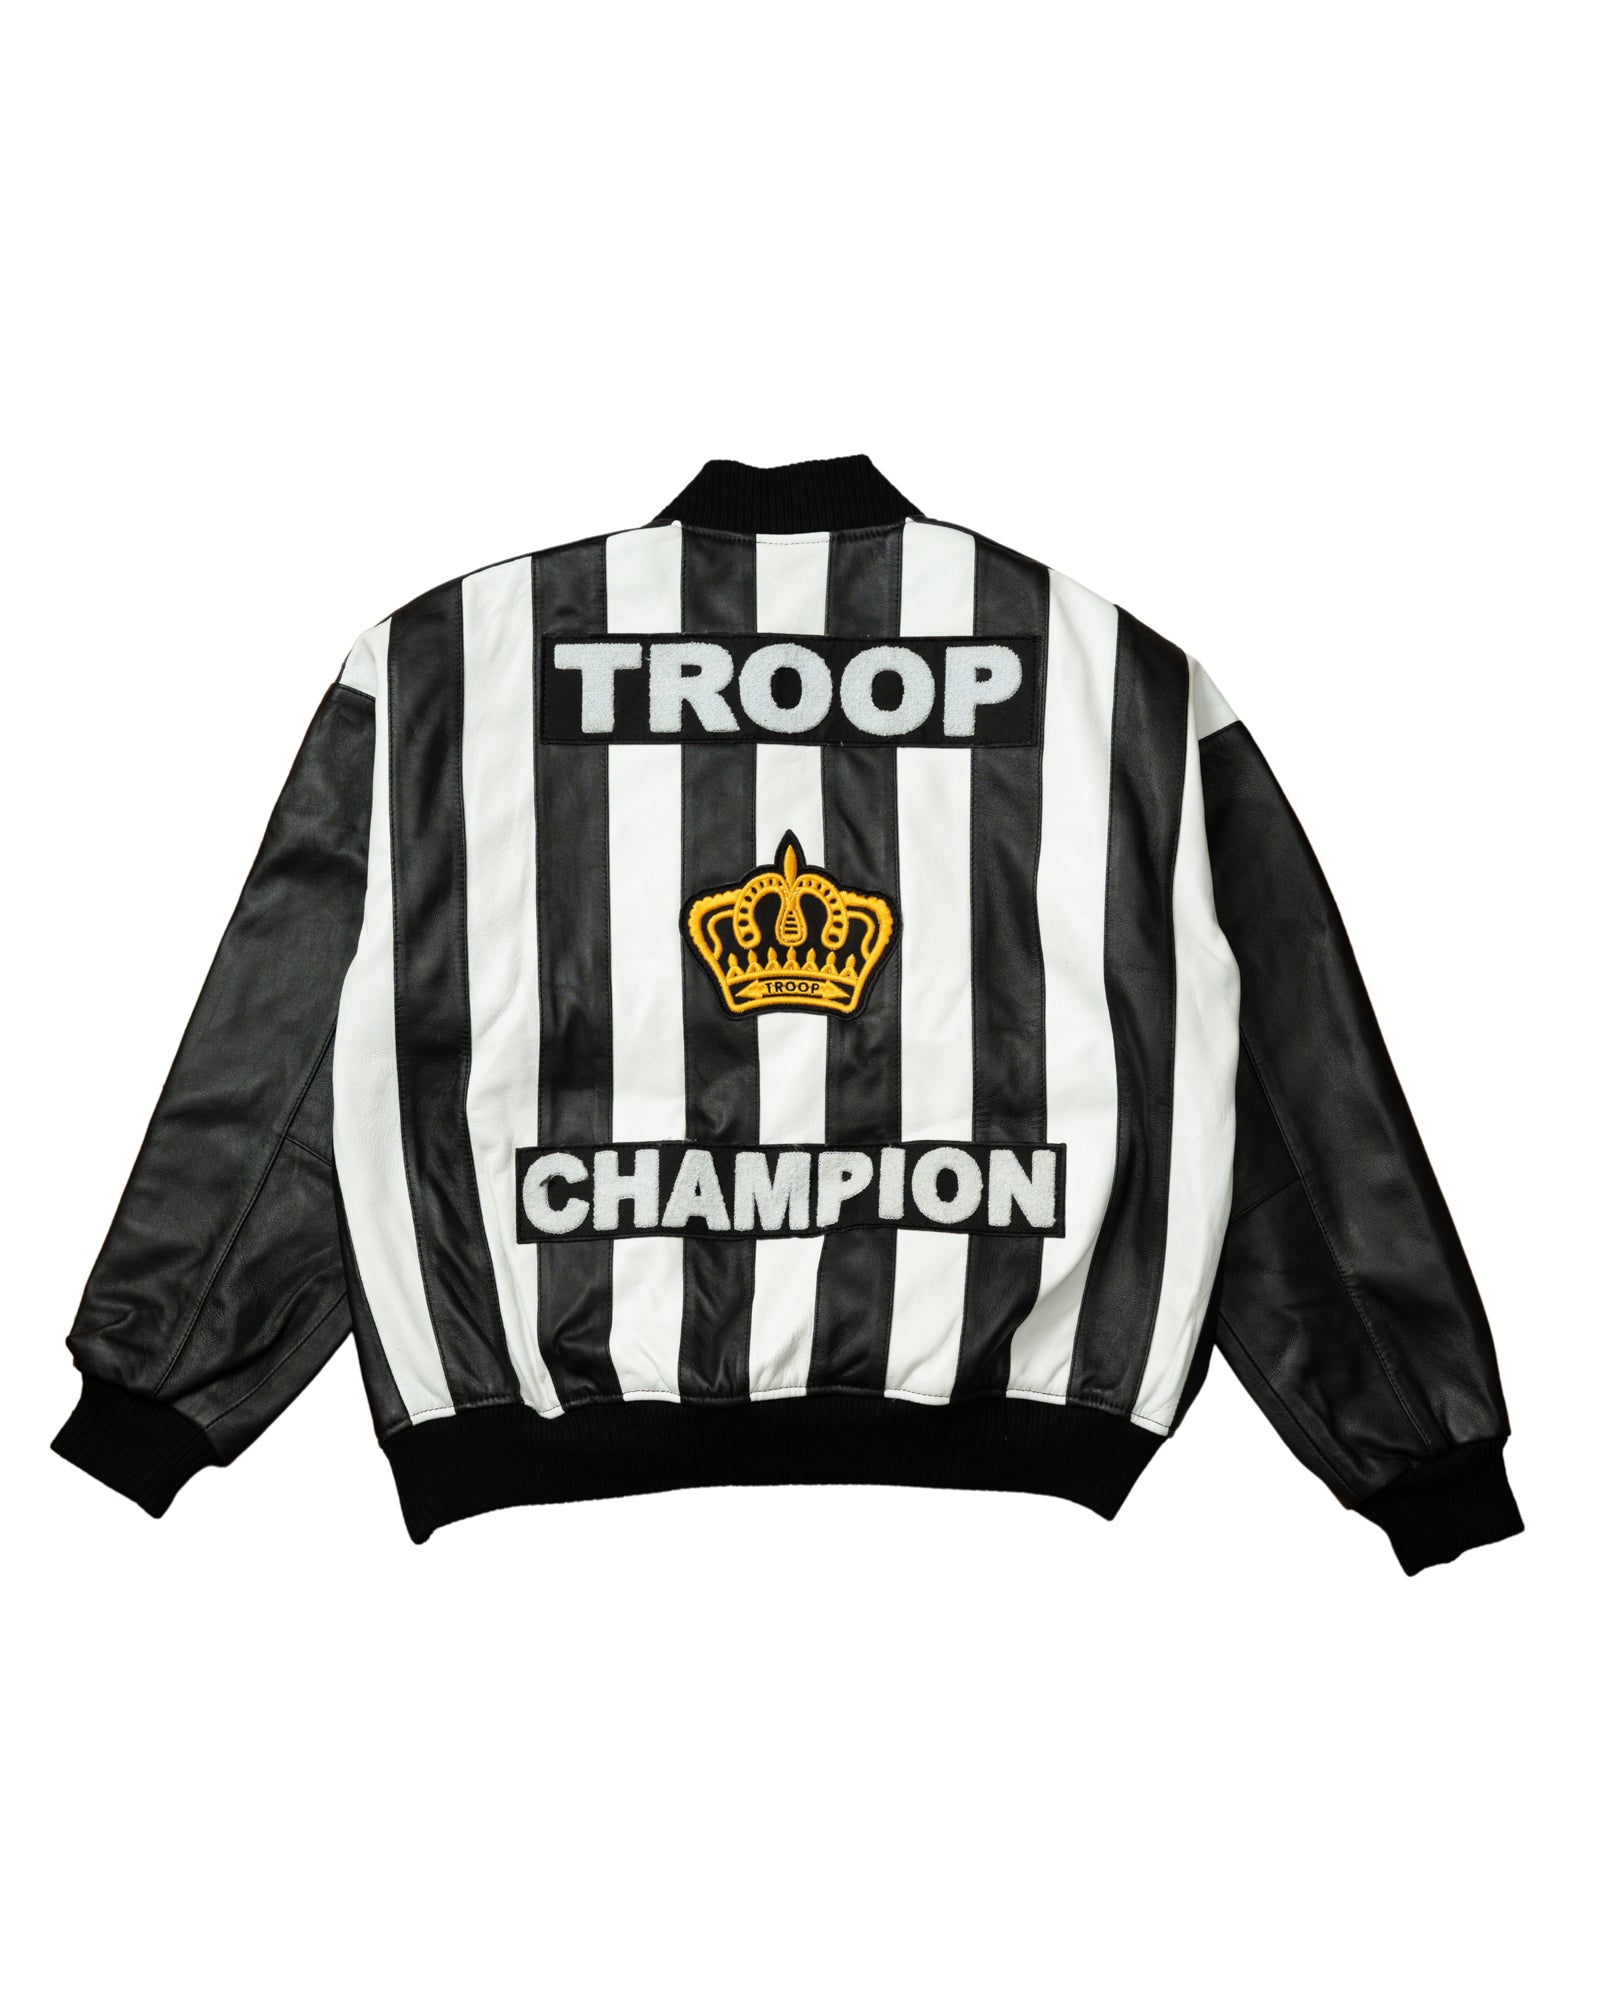 Troop Champion Jacket Black/White - of Troop